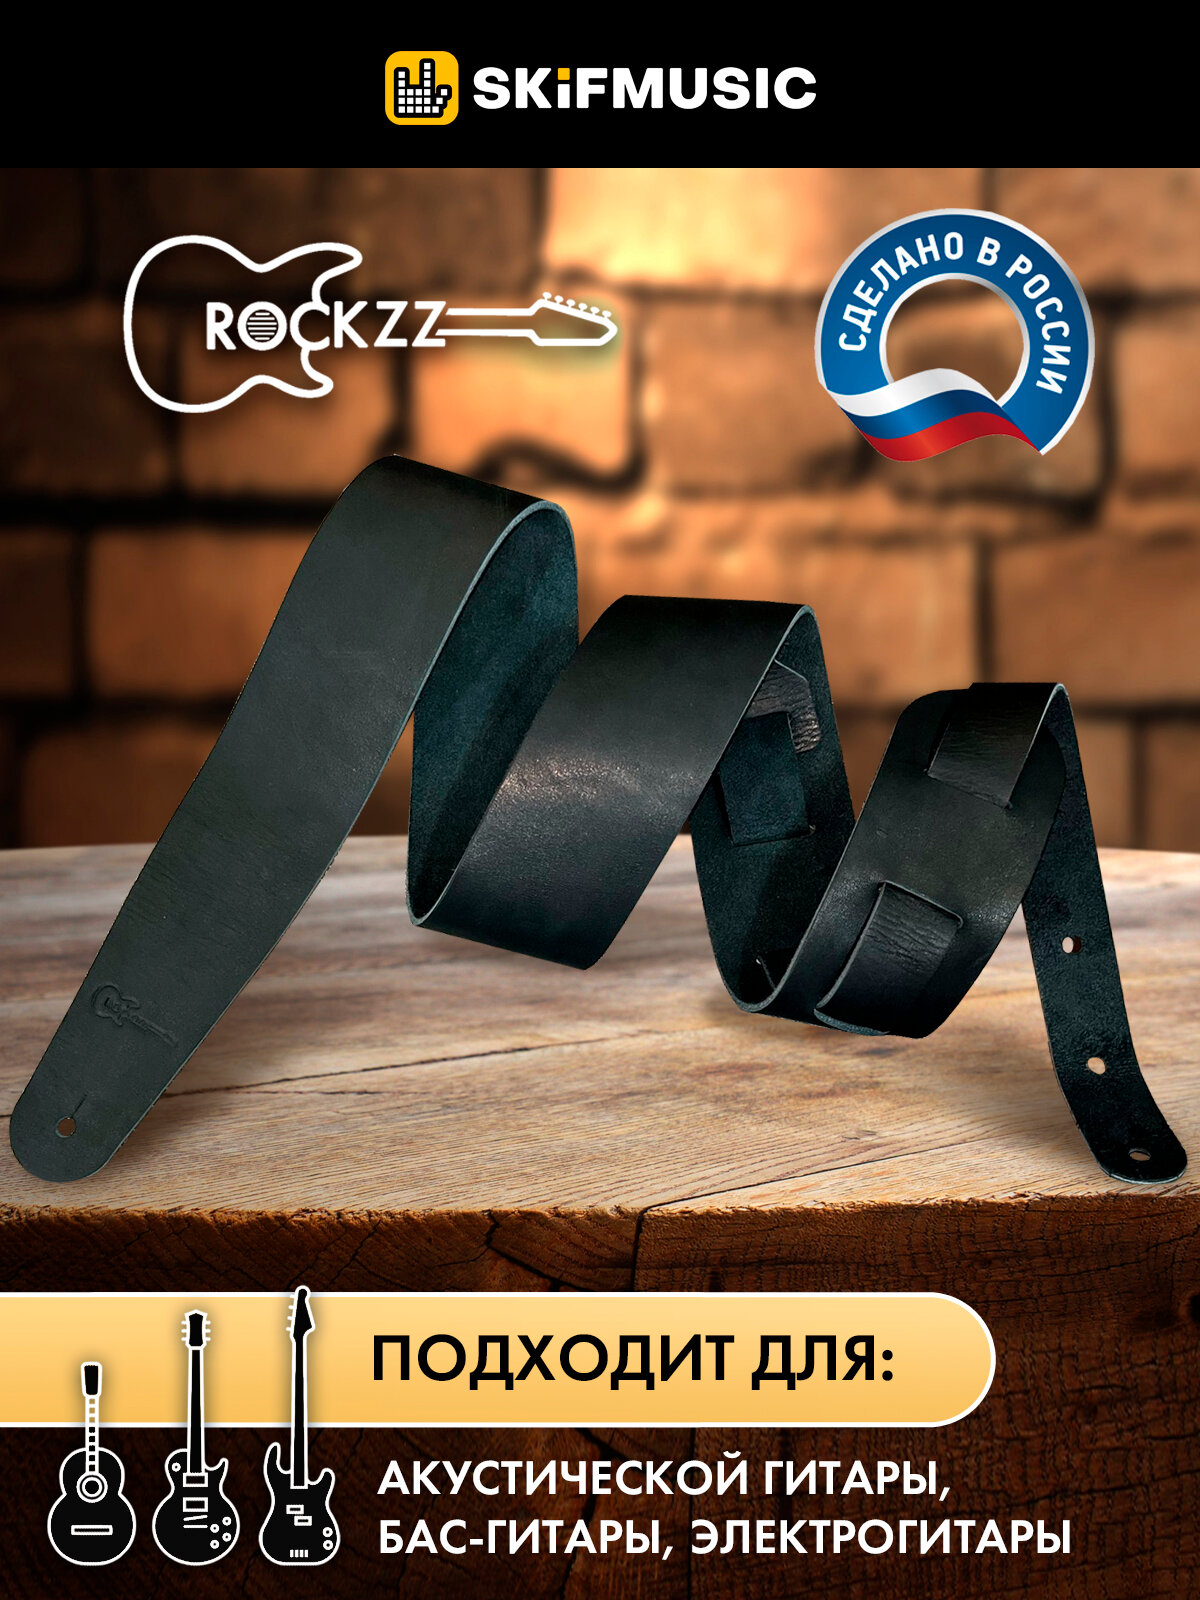 Ремень для гитары акустической, бас-гитары, электрогитары Rockzz RKZ-002 Leather Black, кожаный, широкий